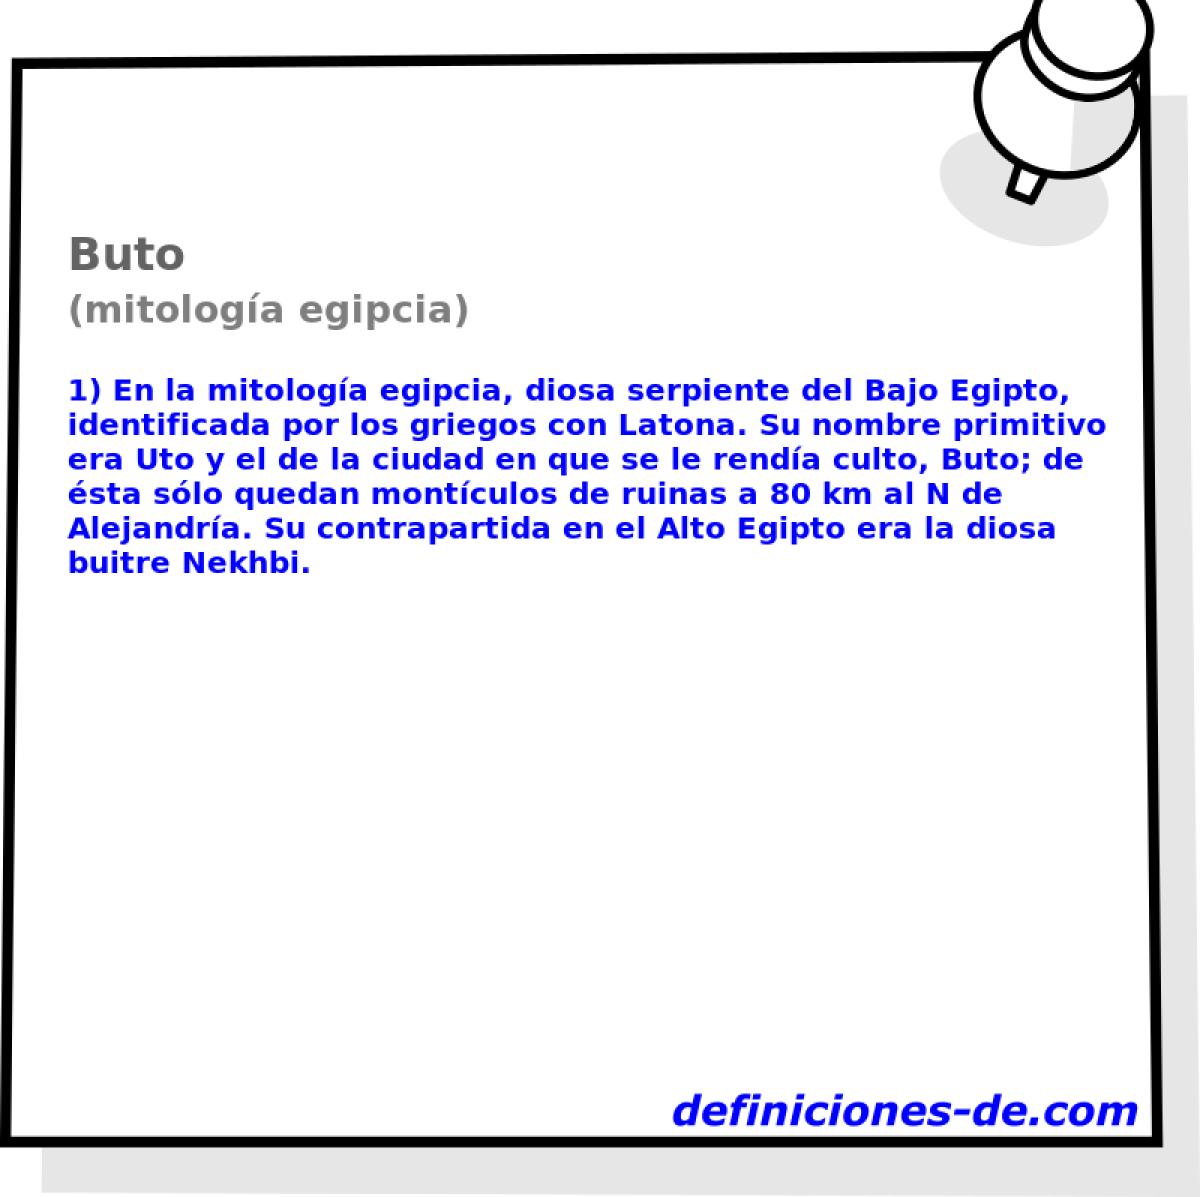 Buto (mitologa egipcia)